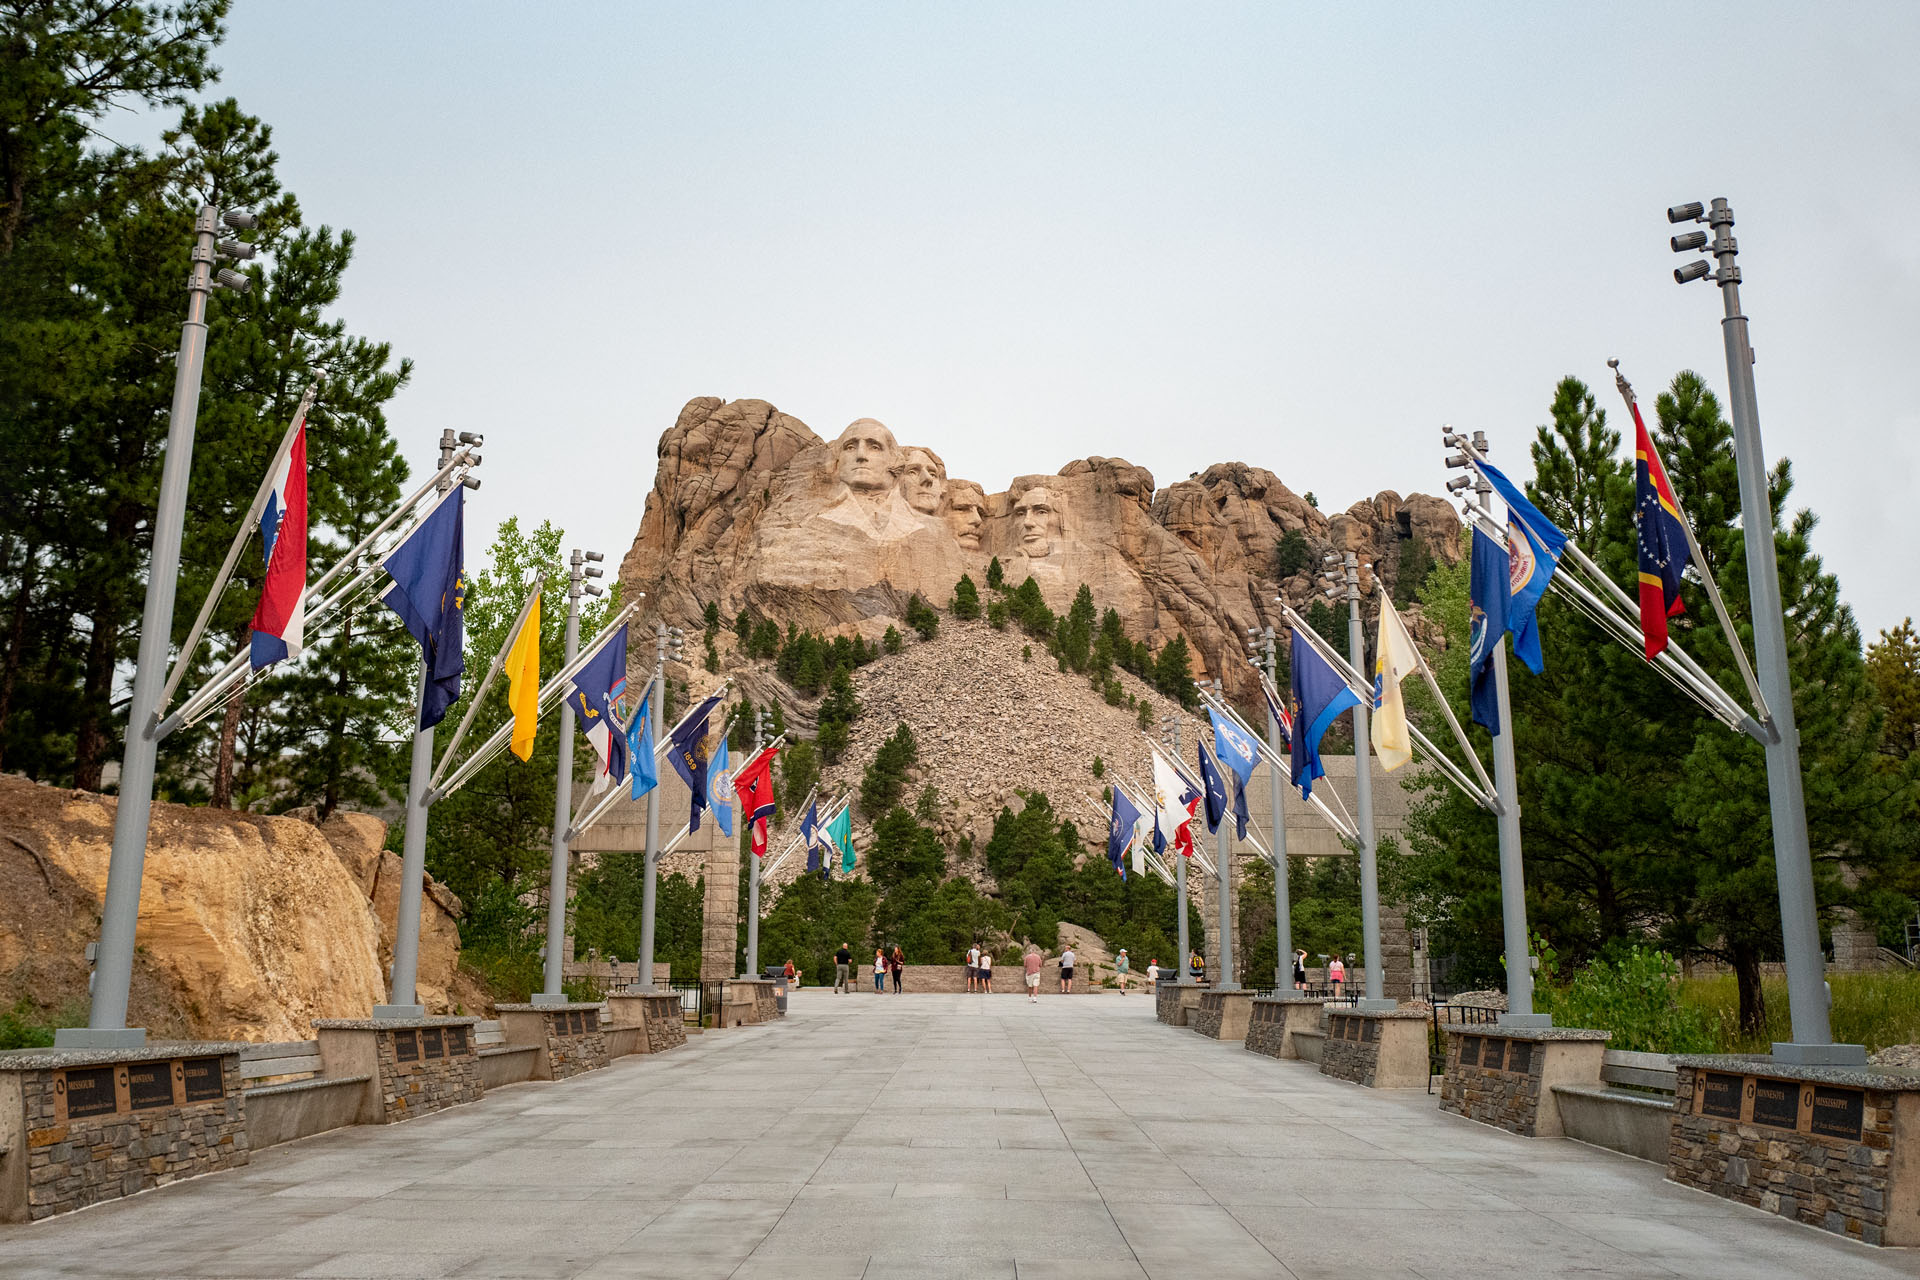 Allee der Flaggen - Mount Rushmore